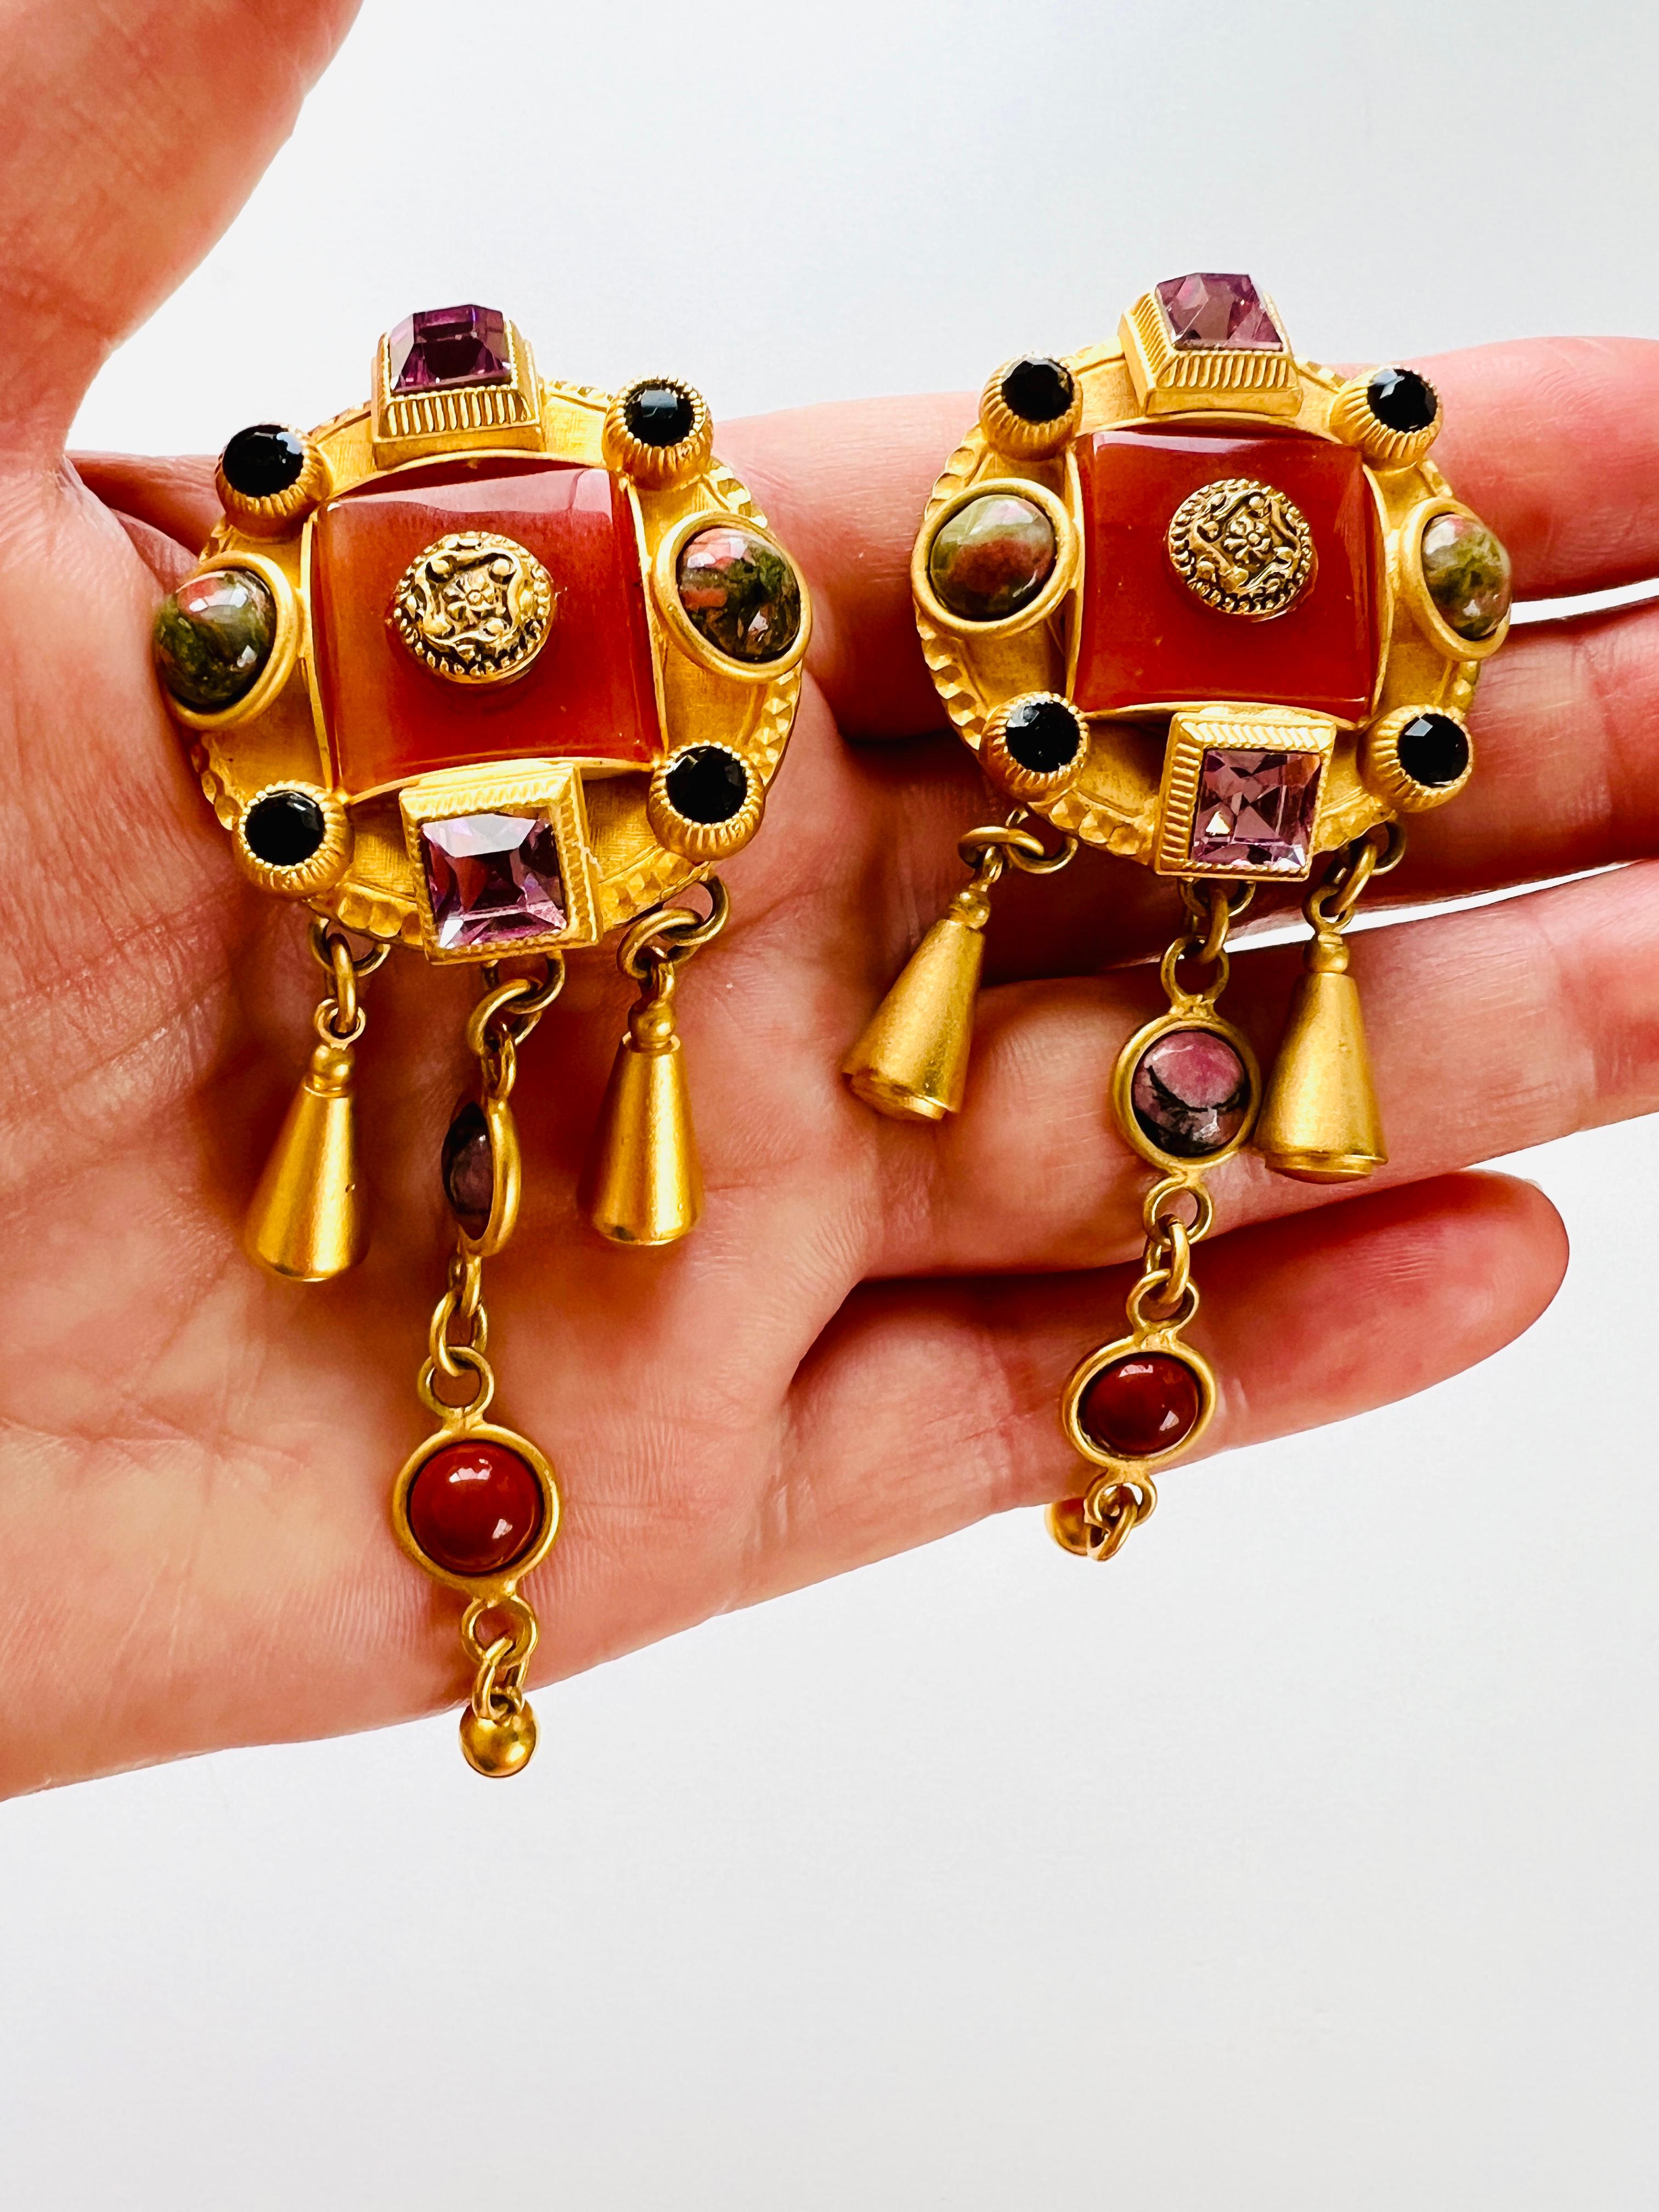 Diese atemberaubenden Ohrringe von Natasha Stambouli zeigen ein Haute-Couture-Design im Stil des etruskischen Revivals, verziert mit Halbedelsteinen in leuchtenden Multicolor-Farbtönen. Die Ohrringe sind mit elf Steinen besetzt, darunter Achat- und